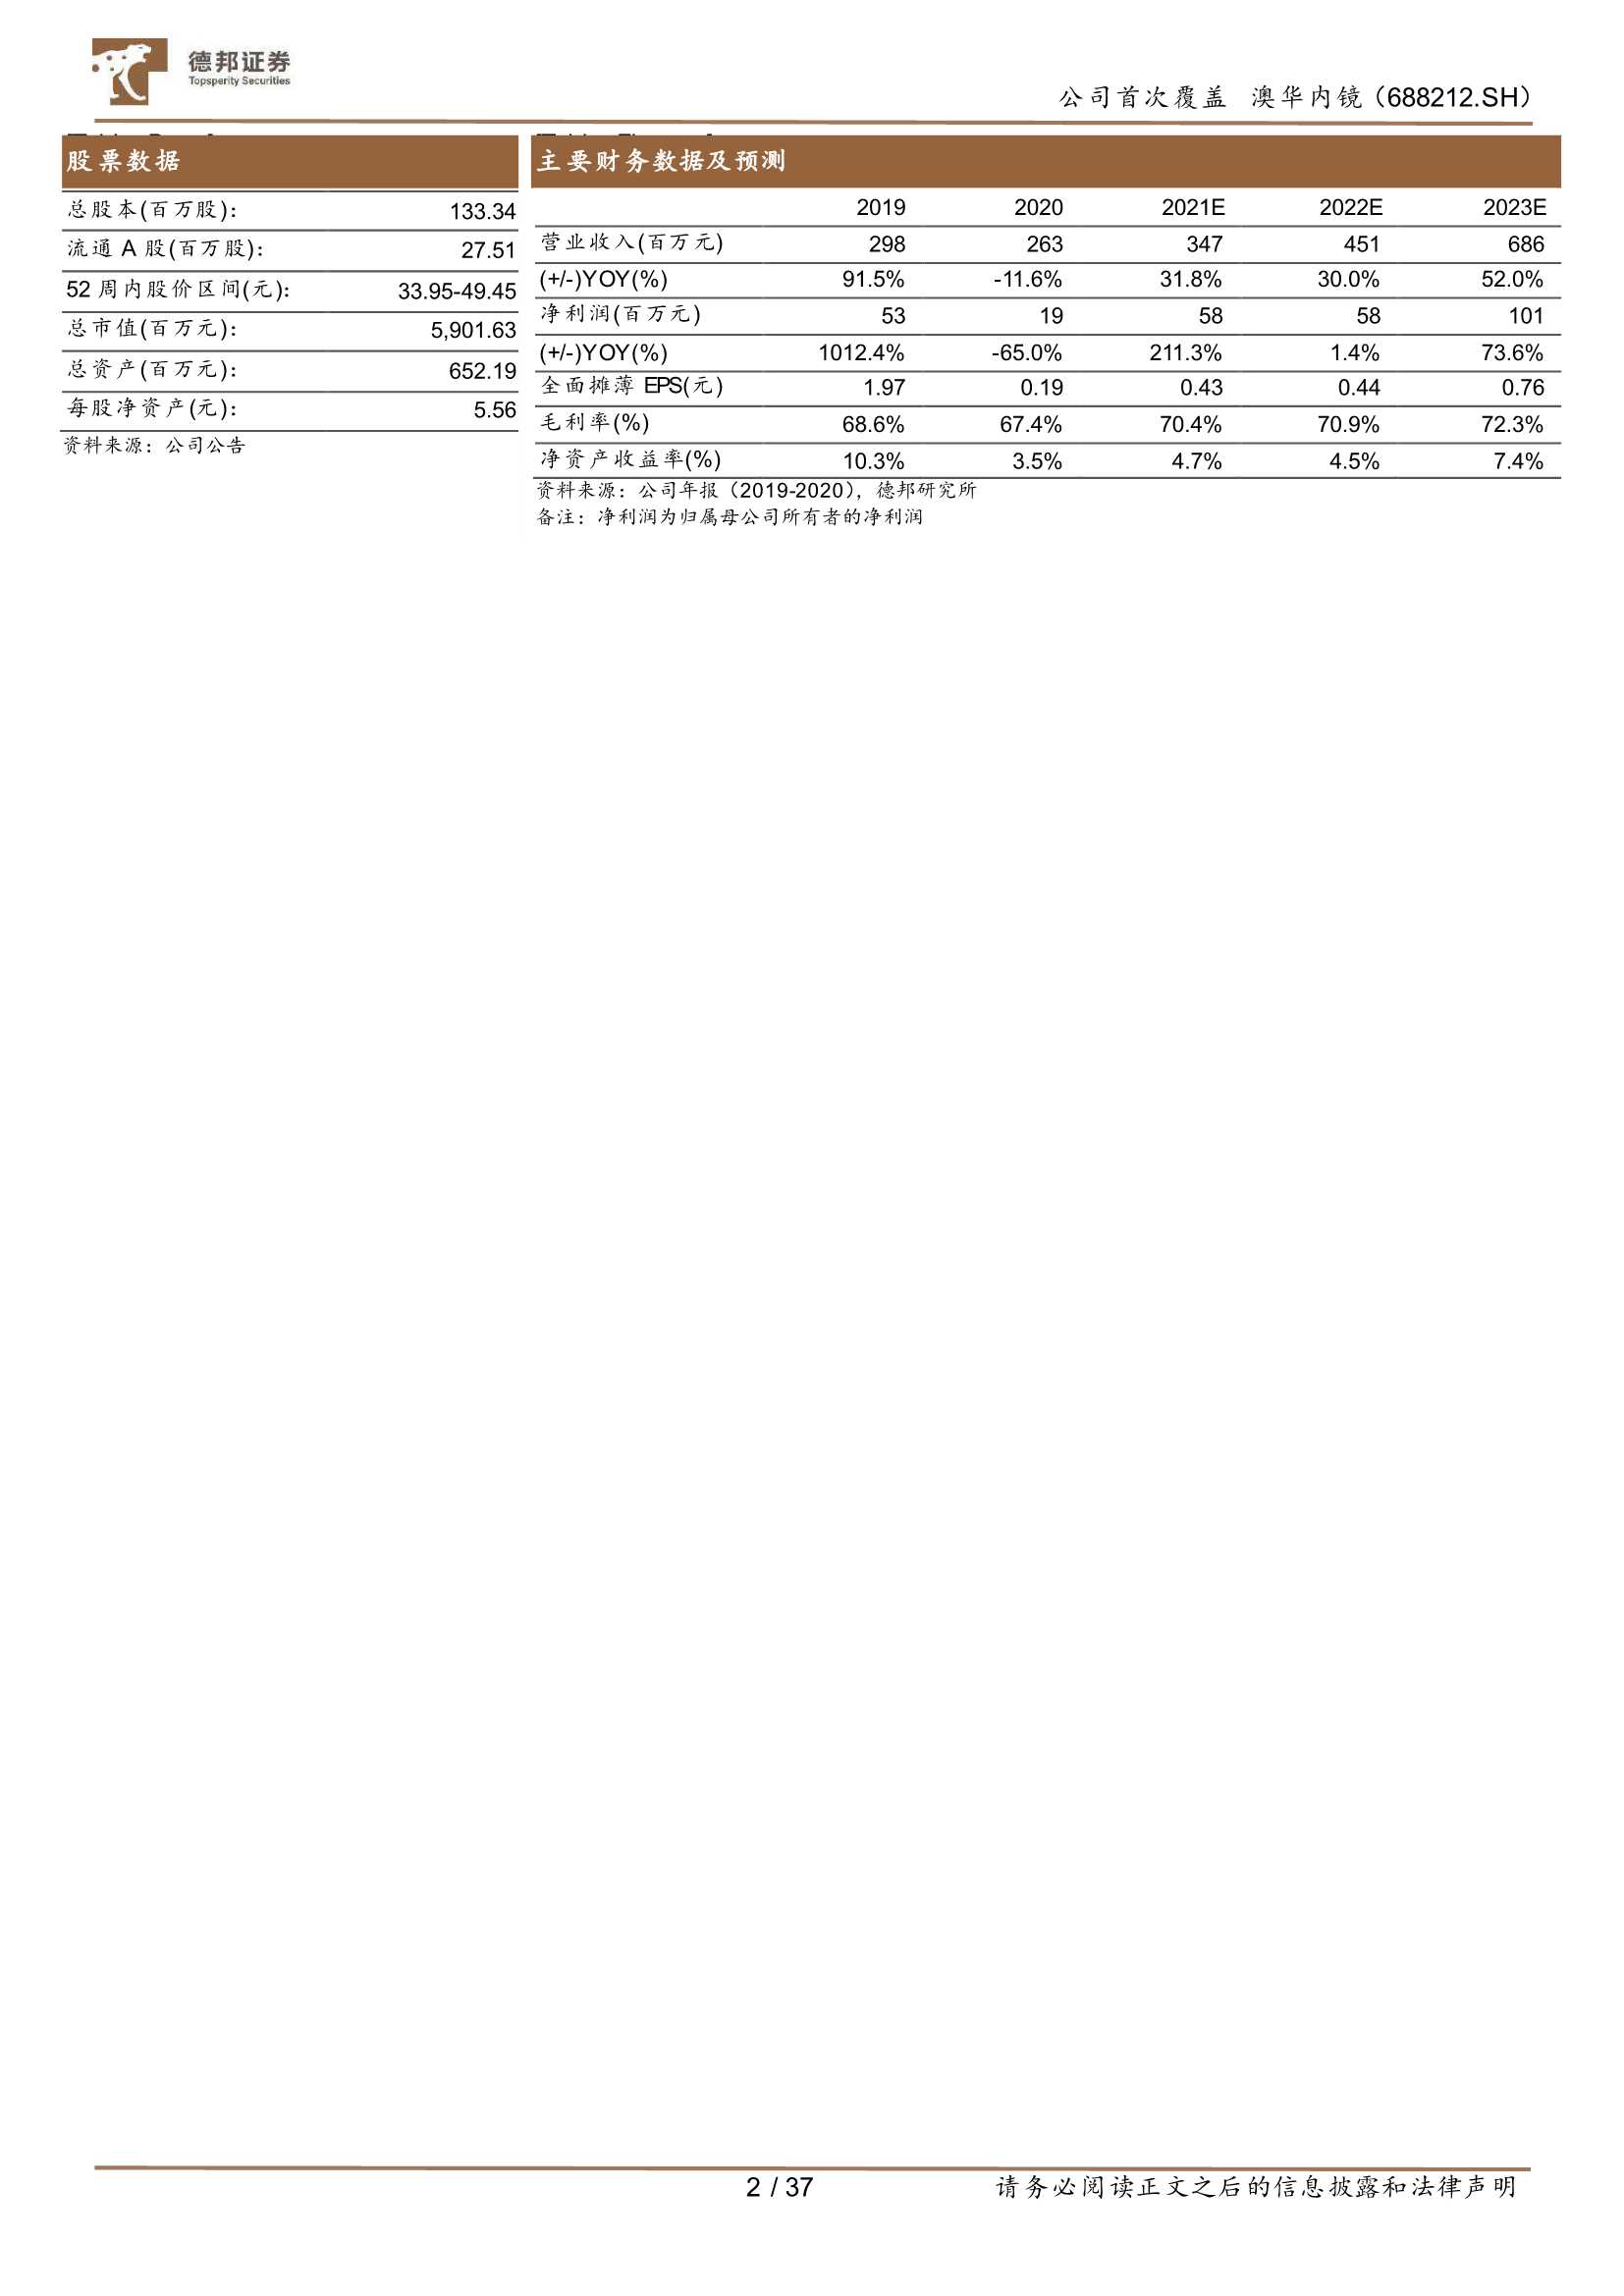 德邦证券-澳华内镜-688212-创新驱动的国产高端软镜龙头-20220329-37页